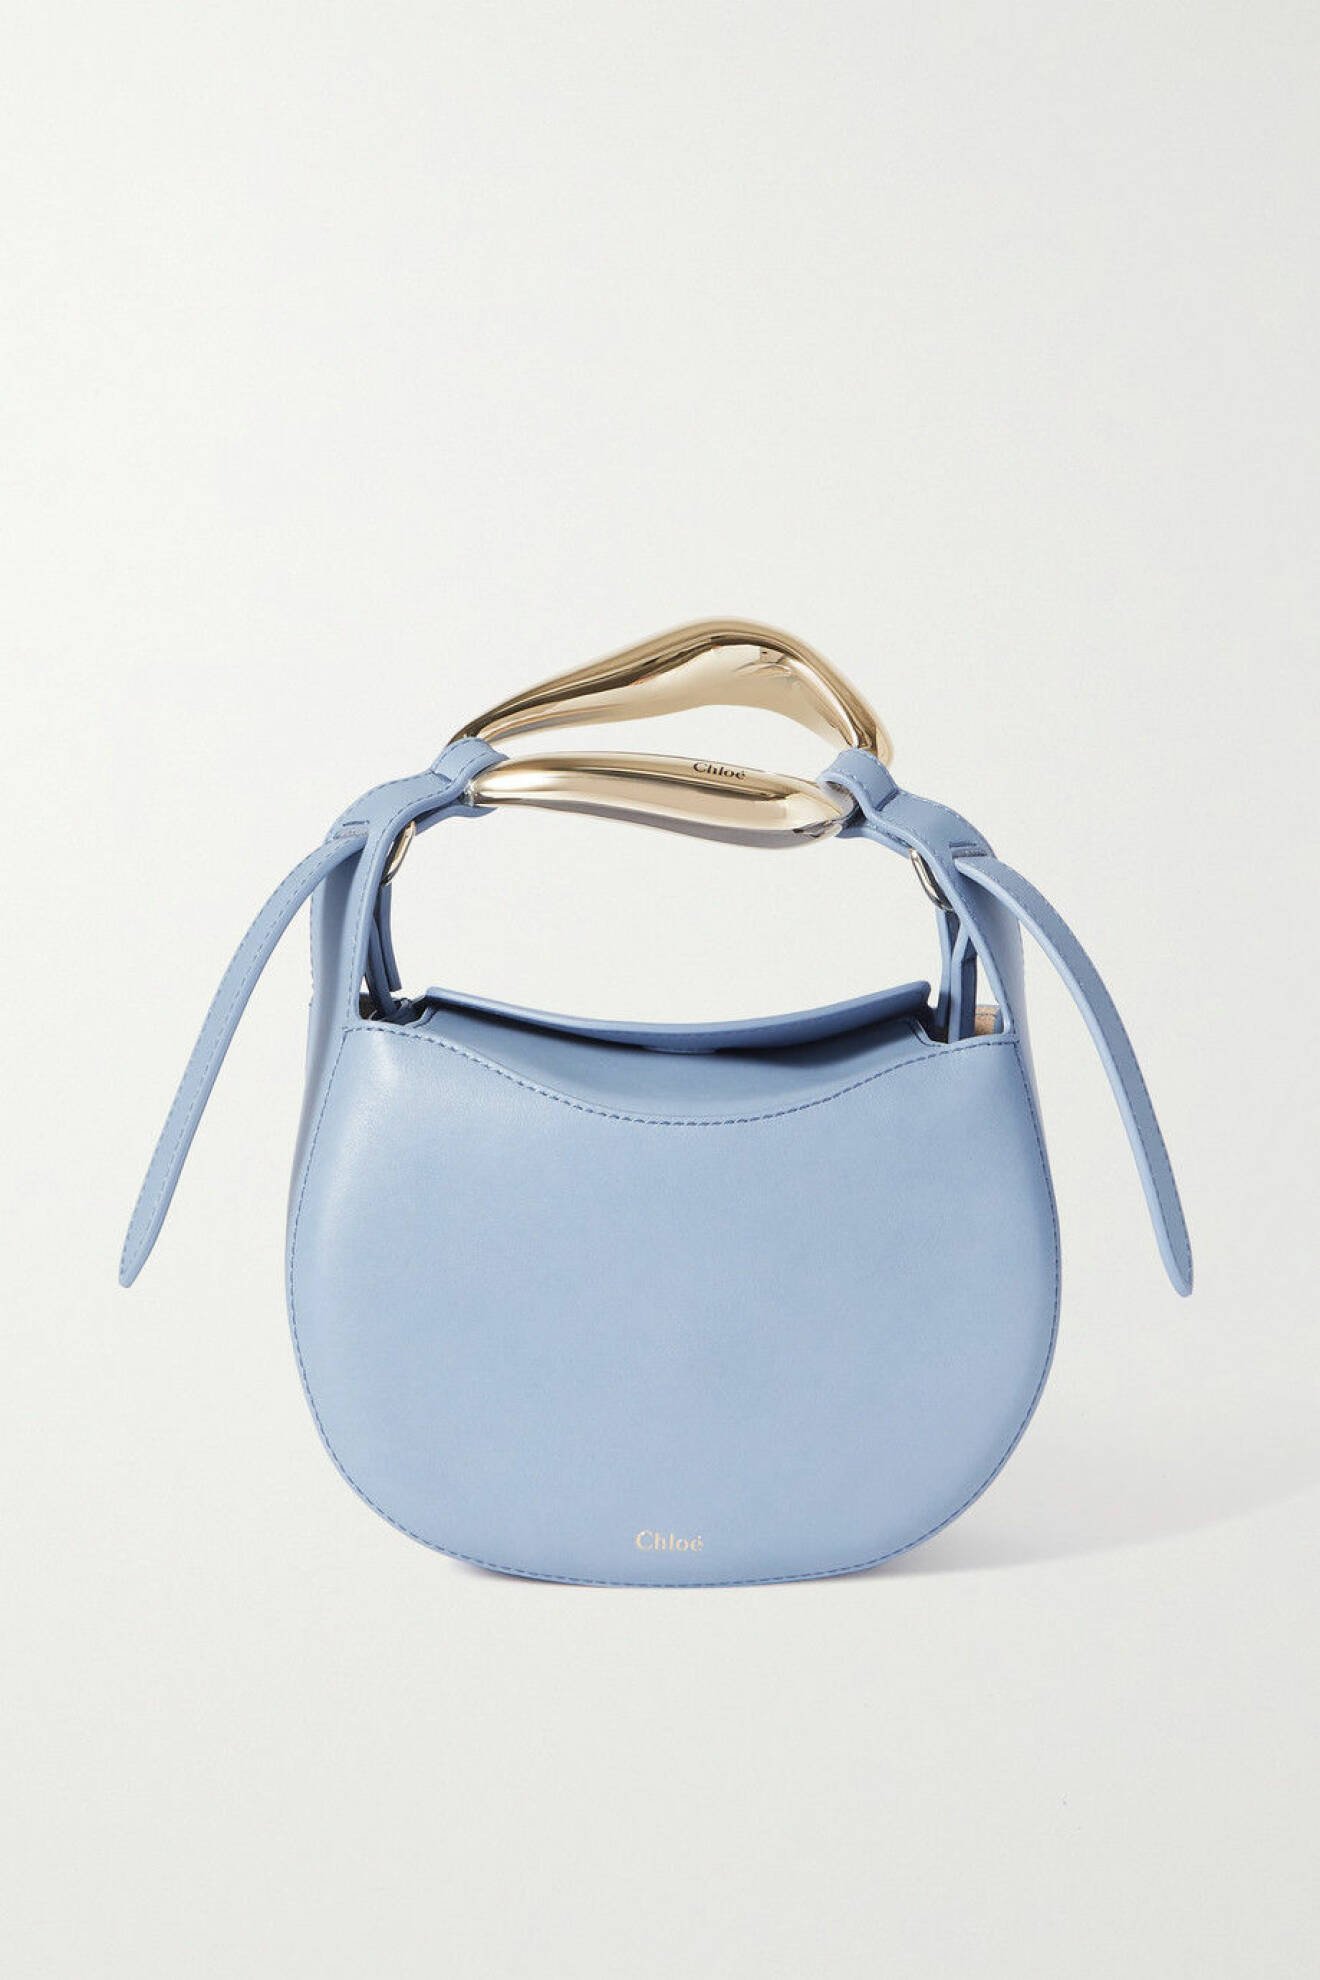 Ljusblå axelremsväska med guldfärgat spänne. Väska i modellen "Kiss small leather tote". Skinnväska från Chloé.